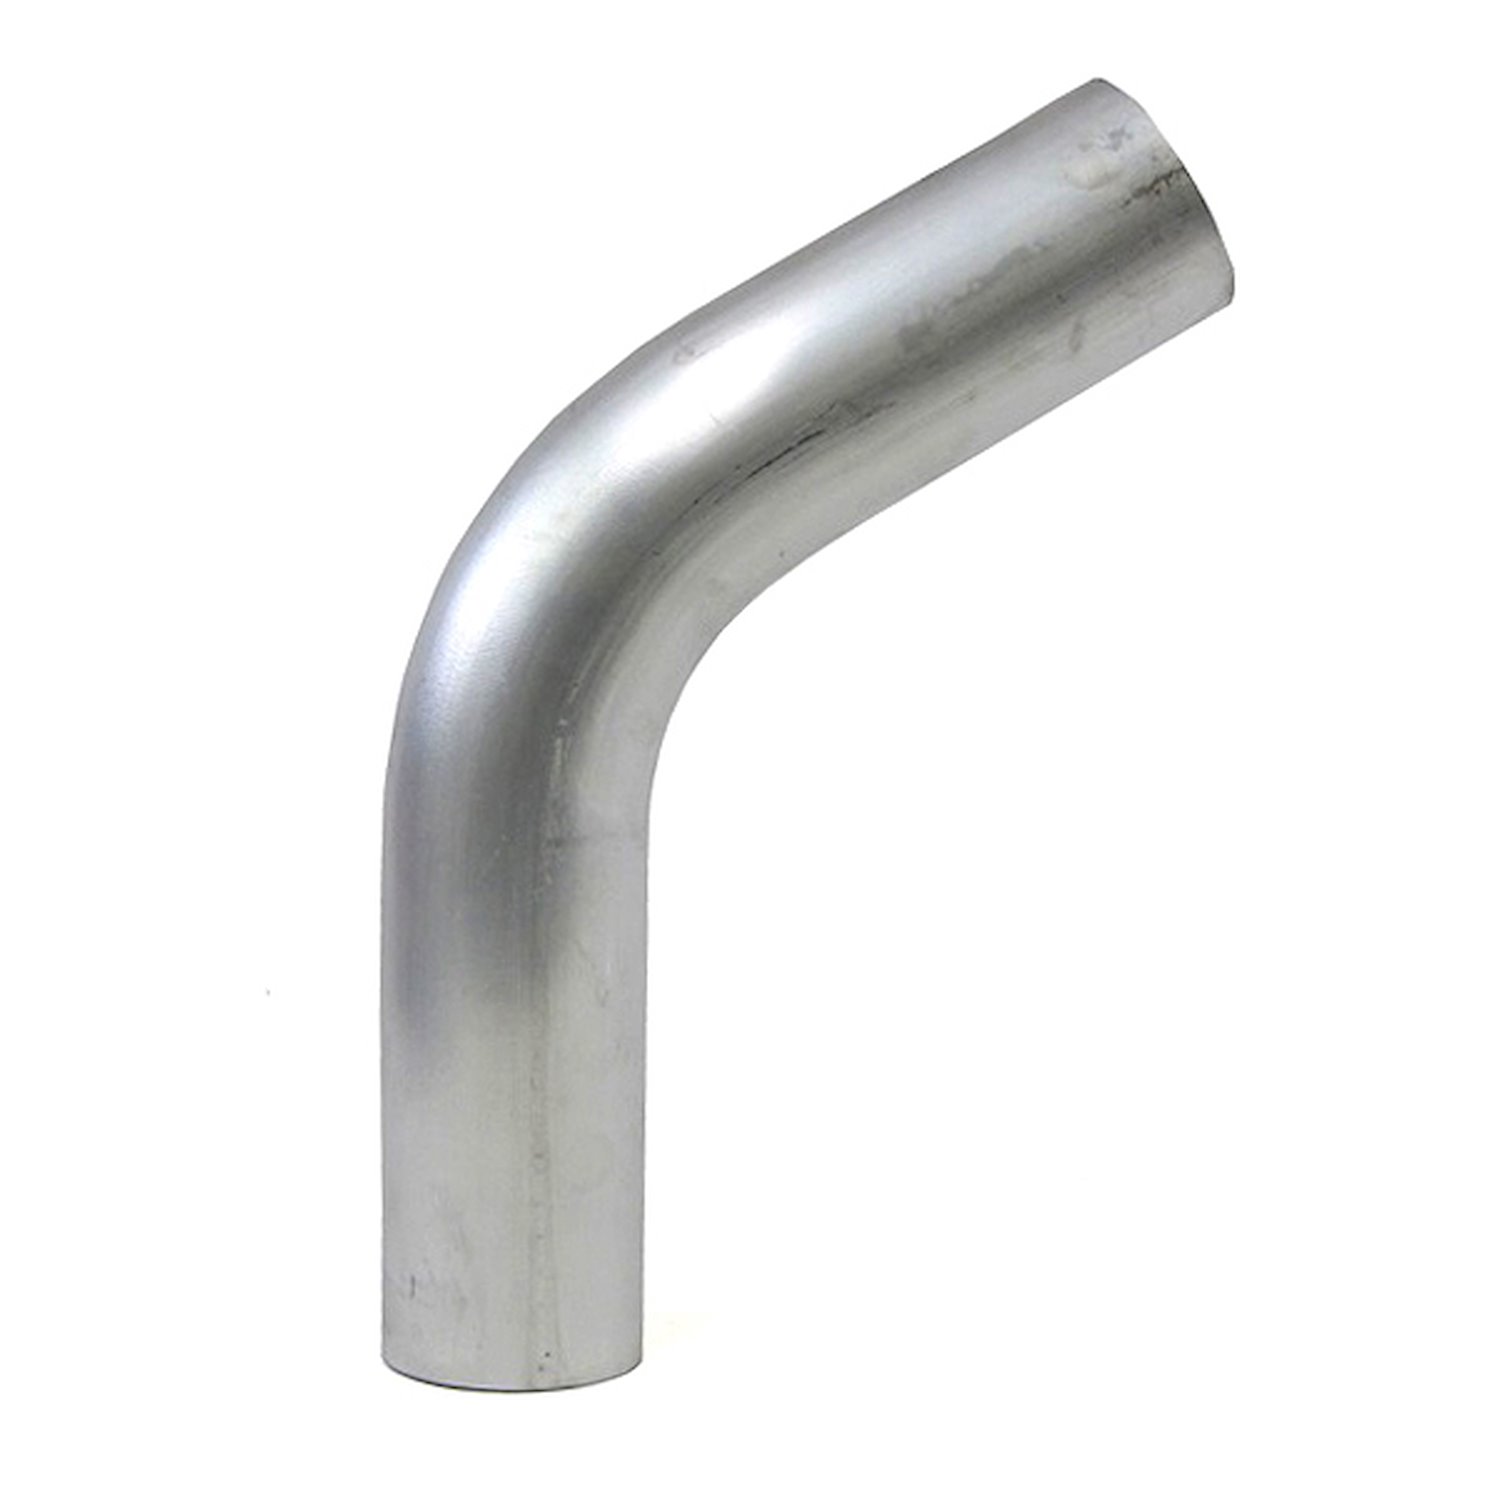 AT60-275-CLR-43 Aluminum Elbow Tube, 6061 Aluminum, 60-Degree Bend Elbow Tubing, 2-3/4 in. OD, Large Radius, 4-5/16 in. CLR